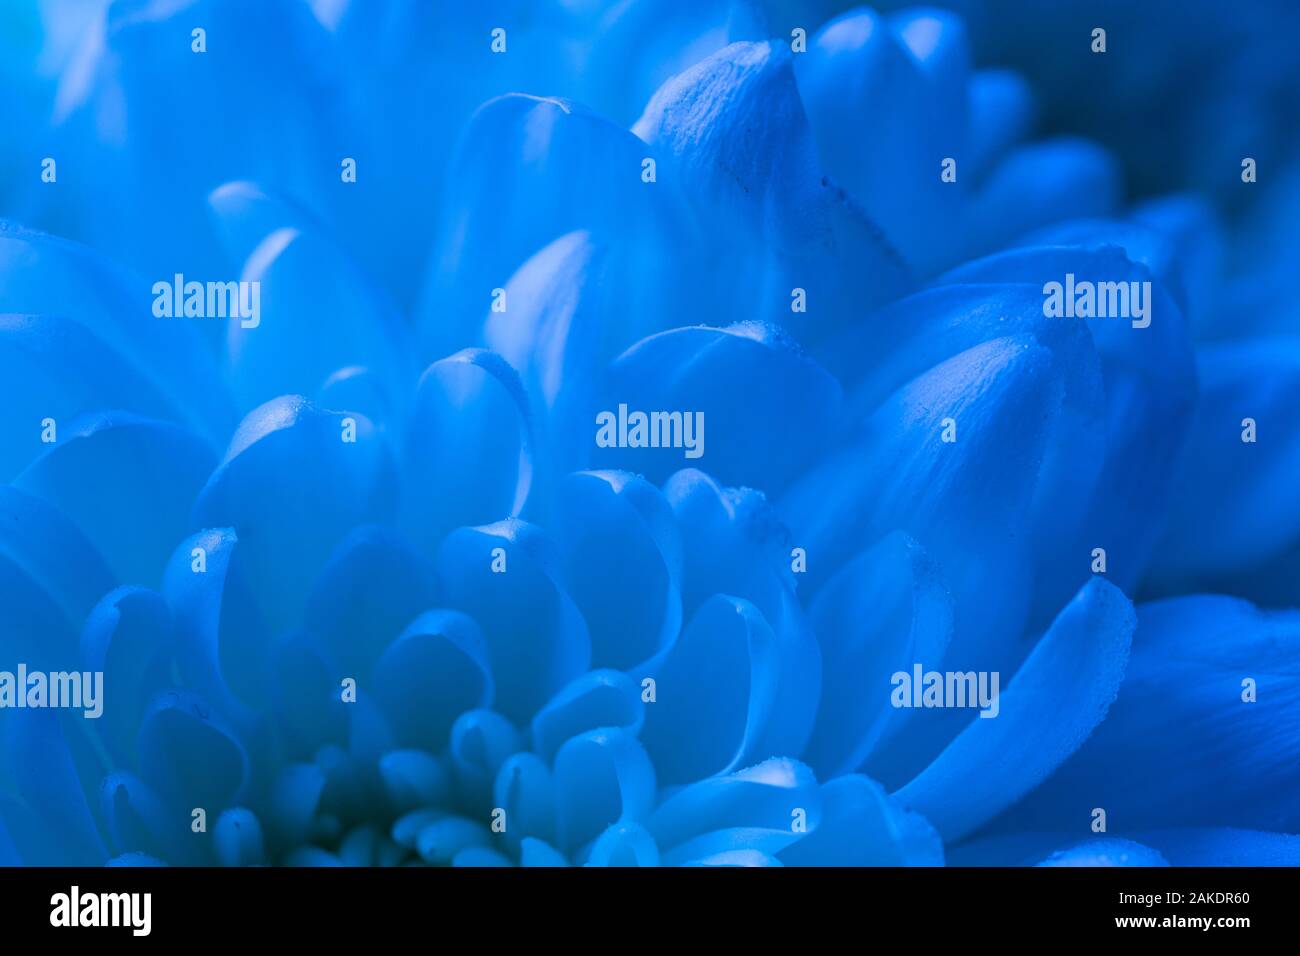 Makro Schießen der Blütenblätter in Cyan-blau Töne Stockfoto